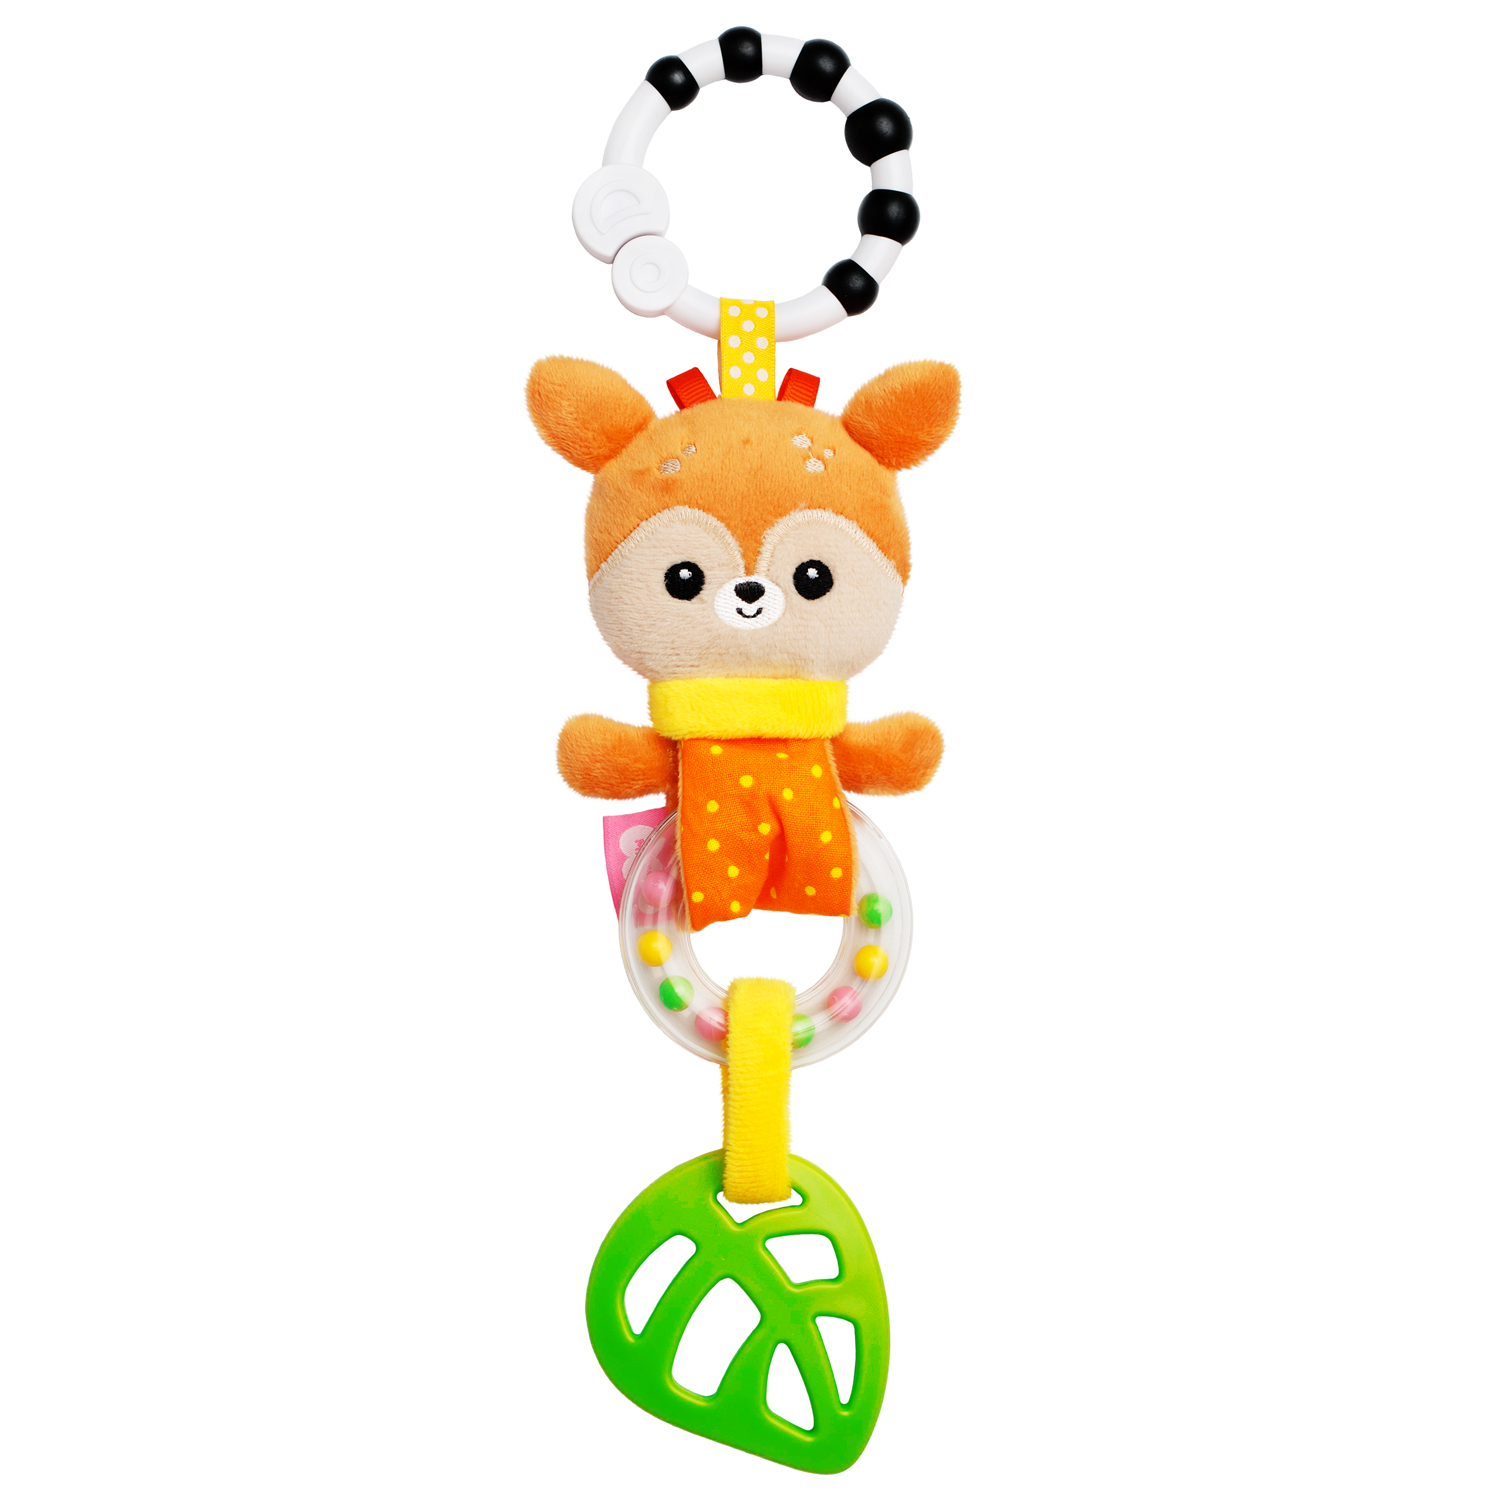 Игрушка подвеска Мякиши развивающая погремушка Оленёнок Бемби для новорождённого грызунок подарок - фото 8